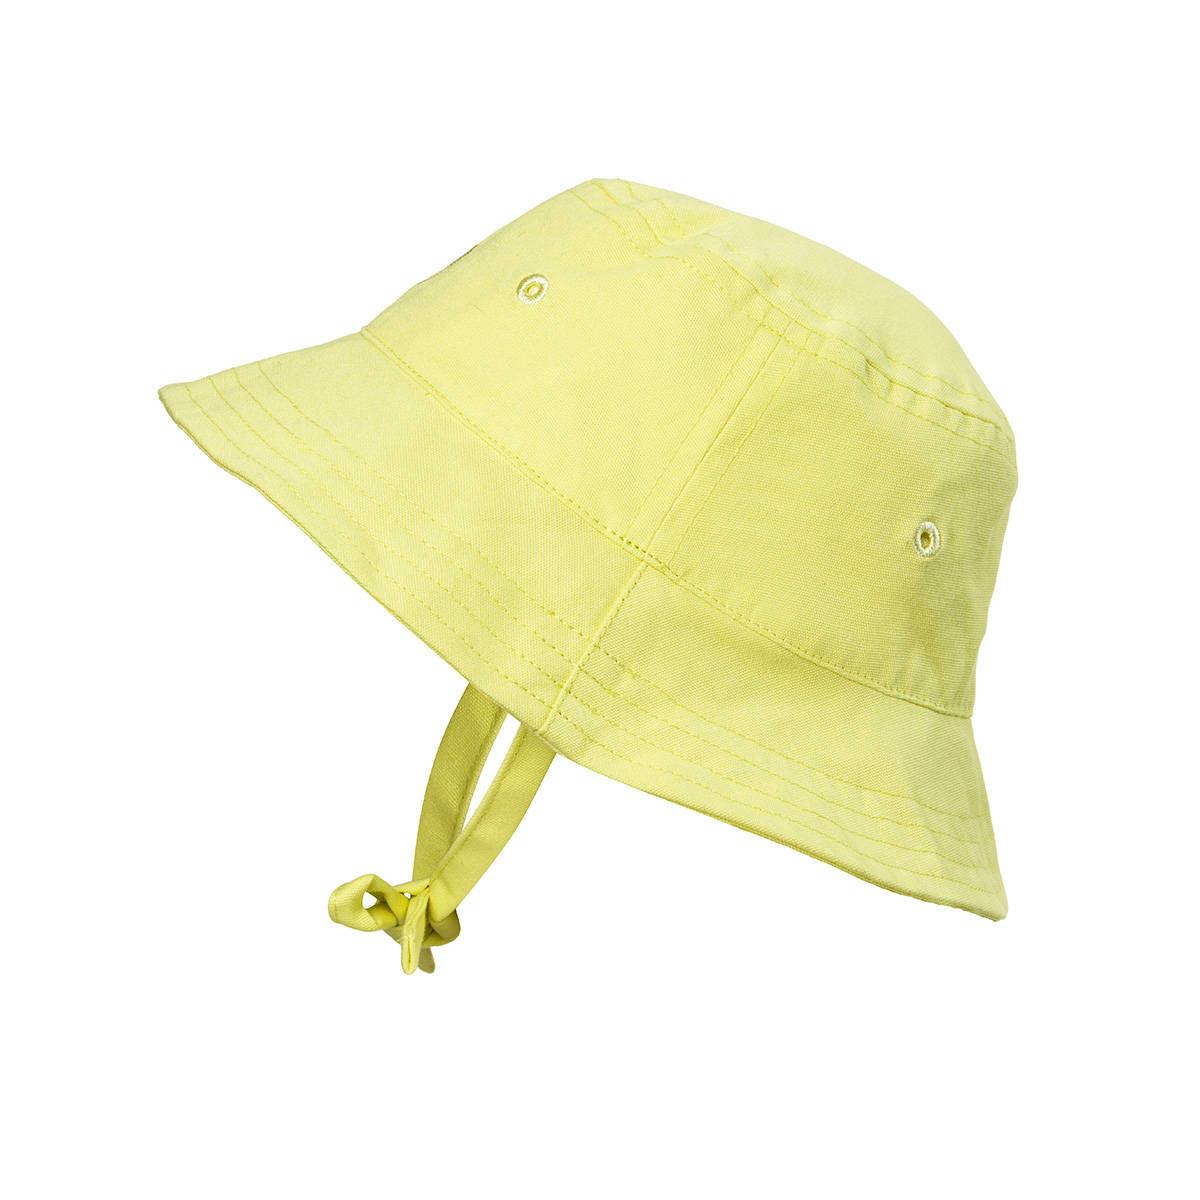 Kapelusz przeciwsłoneczny dla dzieci Elodie Details Sunny Day Yellow z ochroną SPF 30, idealny na lato.